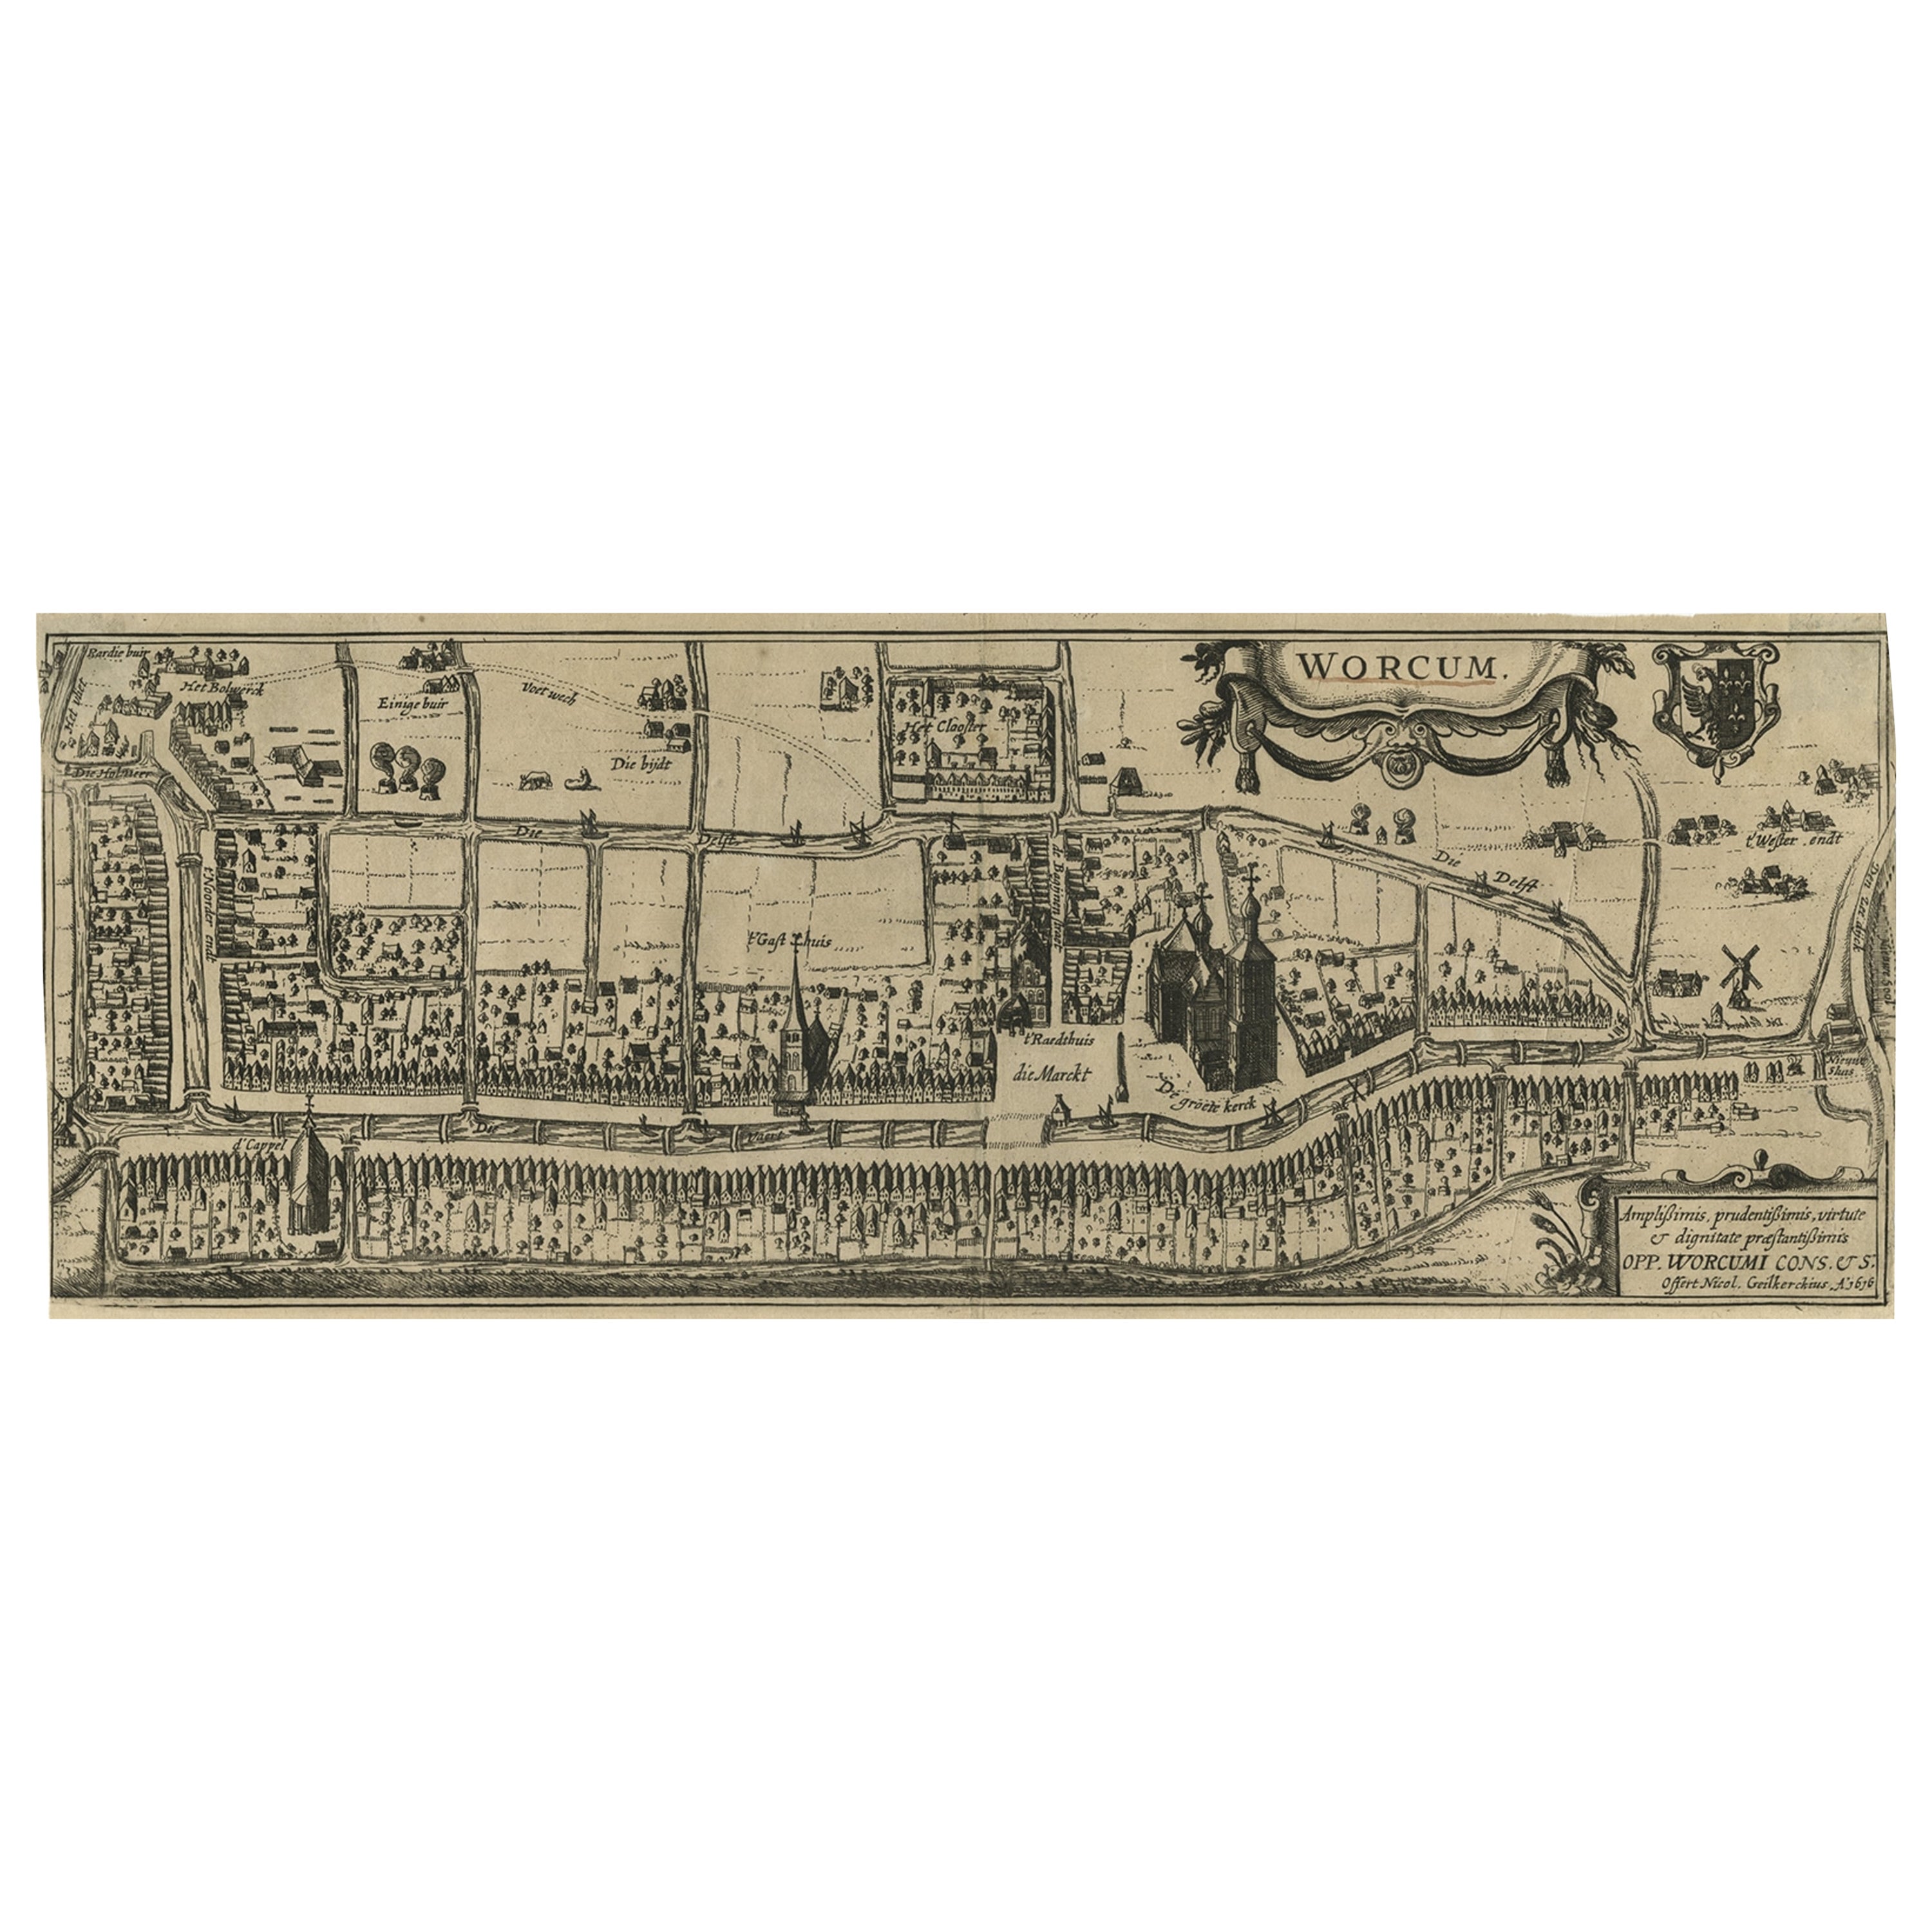 Vieille et rare vue originale de la ville de Workum, Friesland, Pays-Bas, 1616